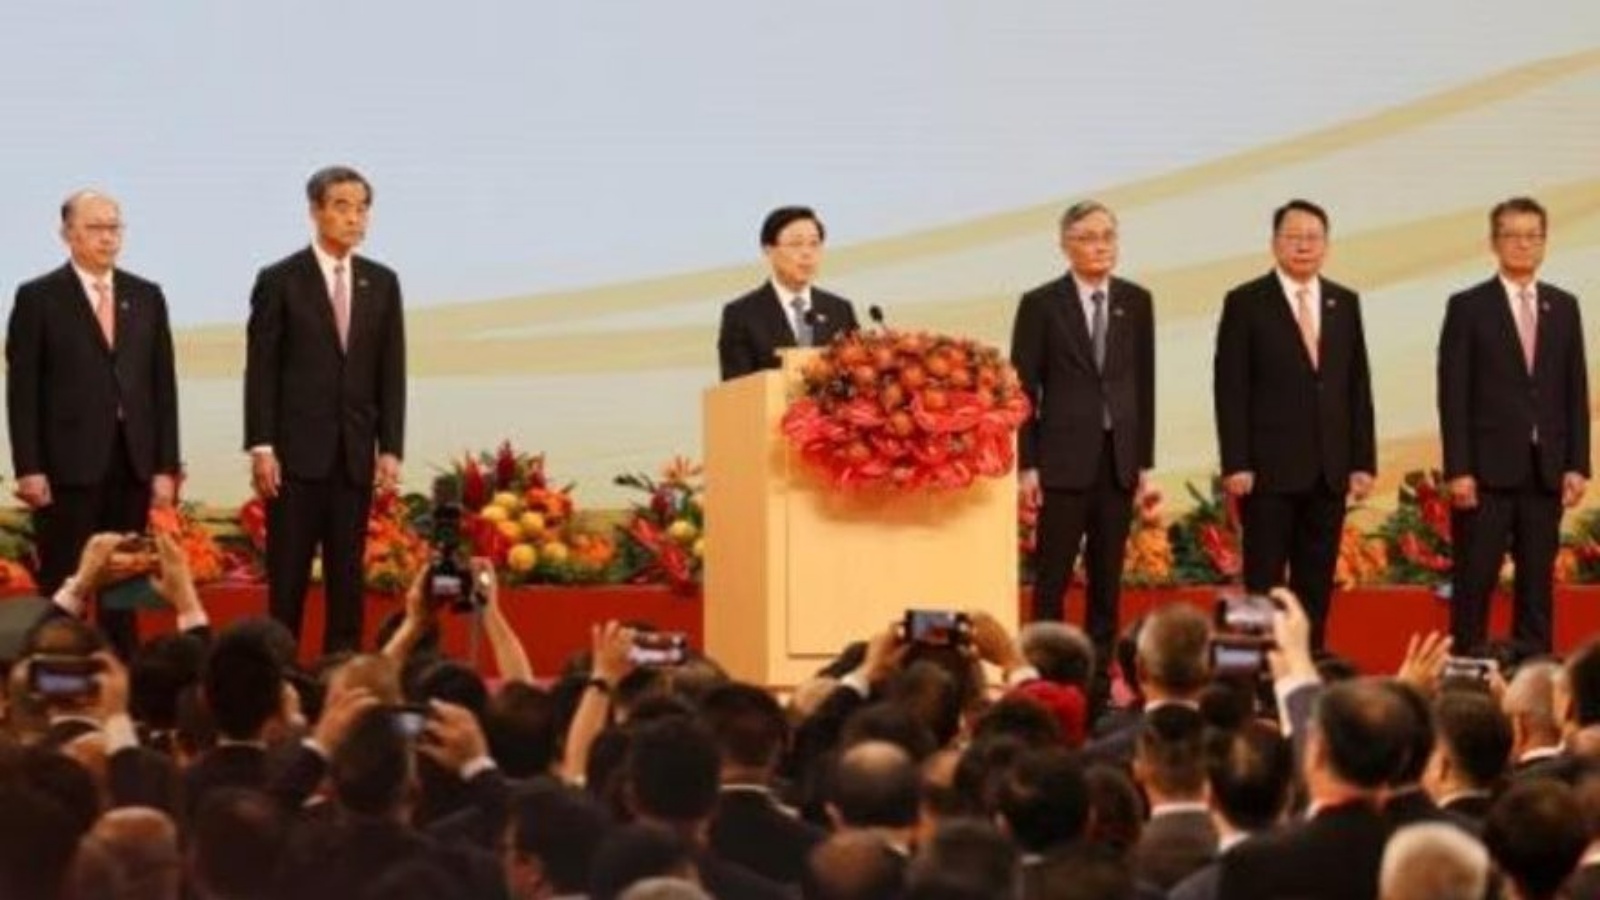  المسؤول التنفيذي لهونغ كونغ جون لي (وسط) متحدثا خلال فعالية في مناسبة الذكرى ال25 لإعادة بريطانيا المدينة إلى الصين، في هونغ كونغ في الأول من يوليو 2023 